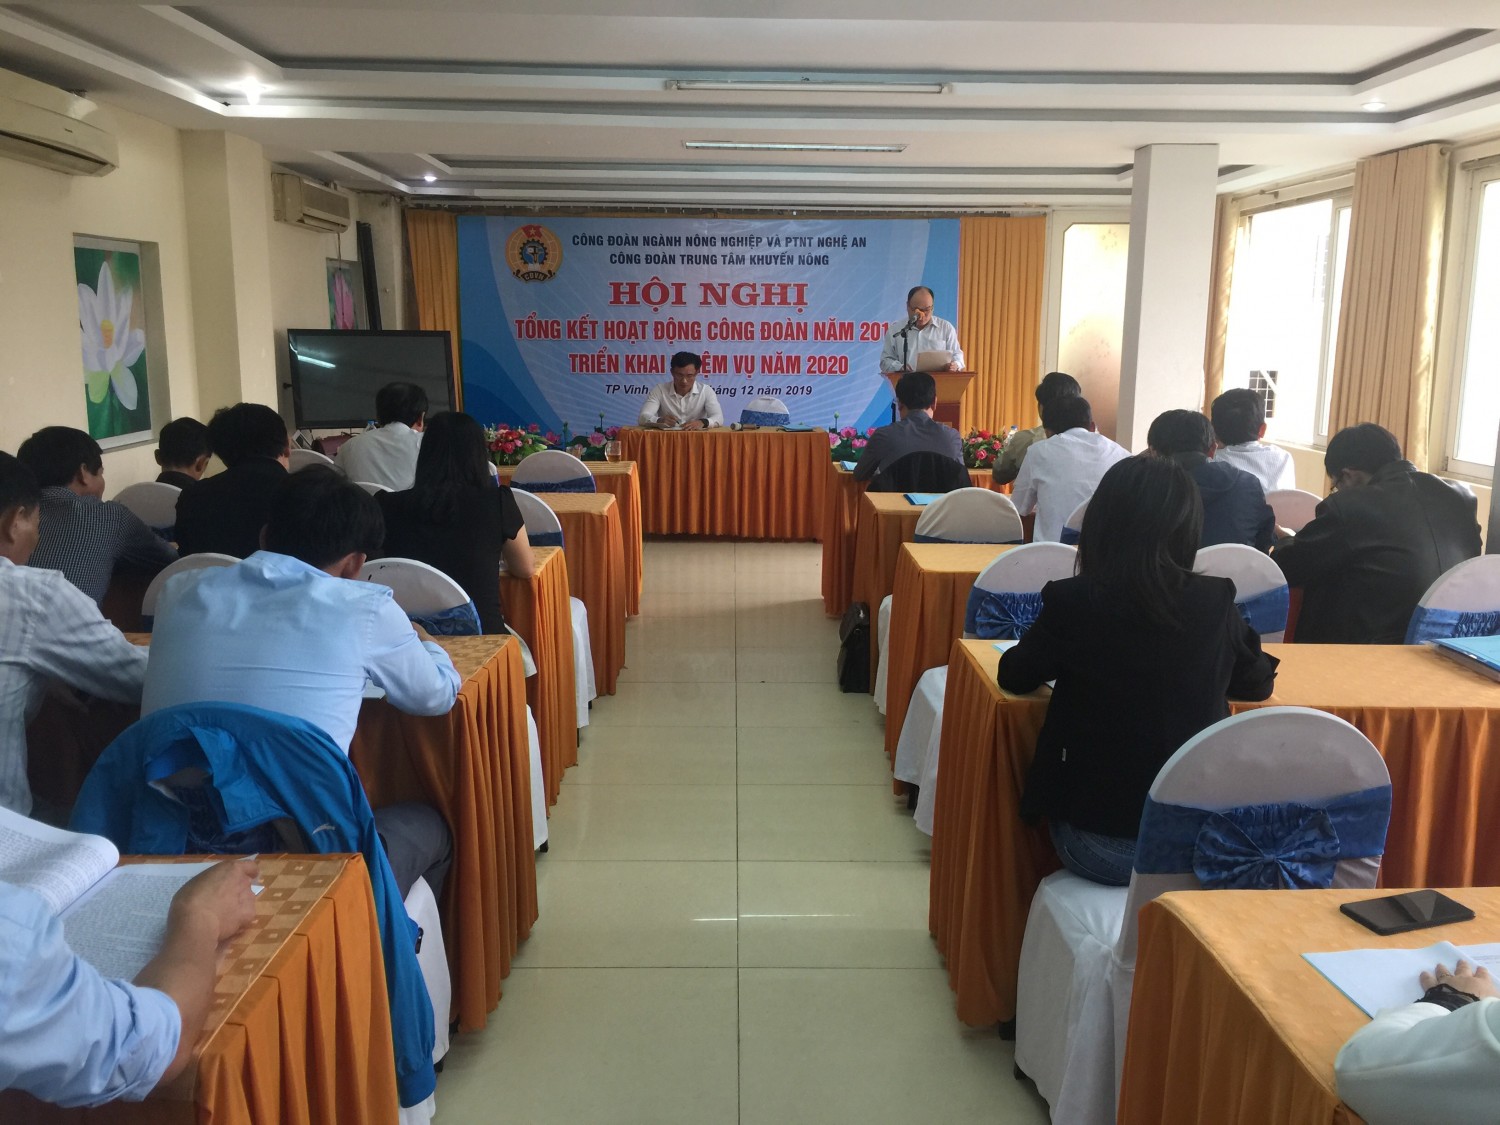 Công đoàn Trung tâm Khuyến nông Nghệ An tổ chức Hội nghị tổng kết công tác Công đoàn năm 2019